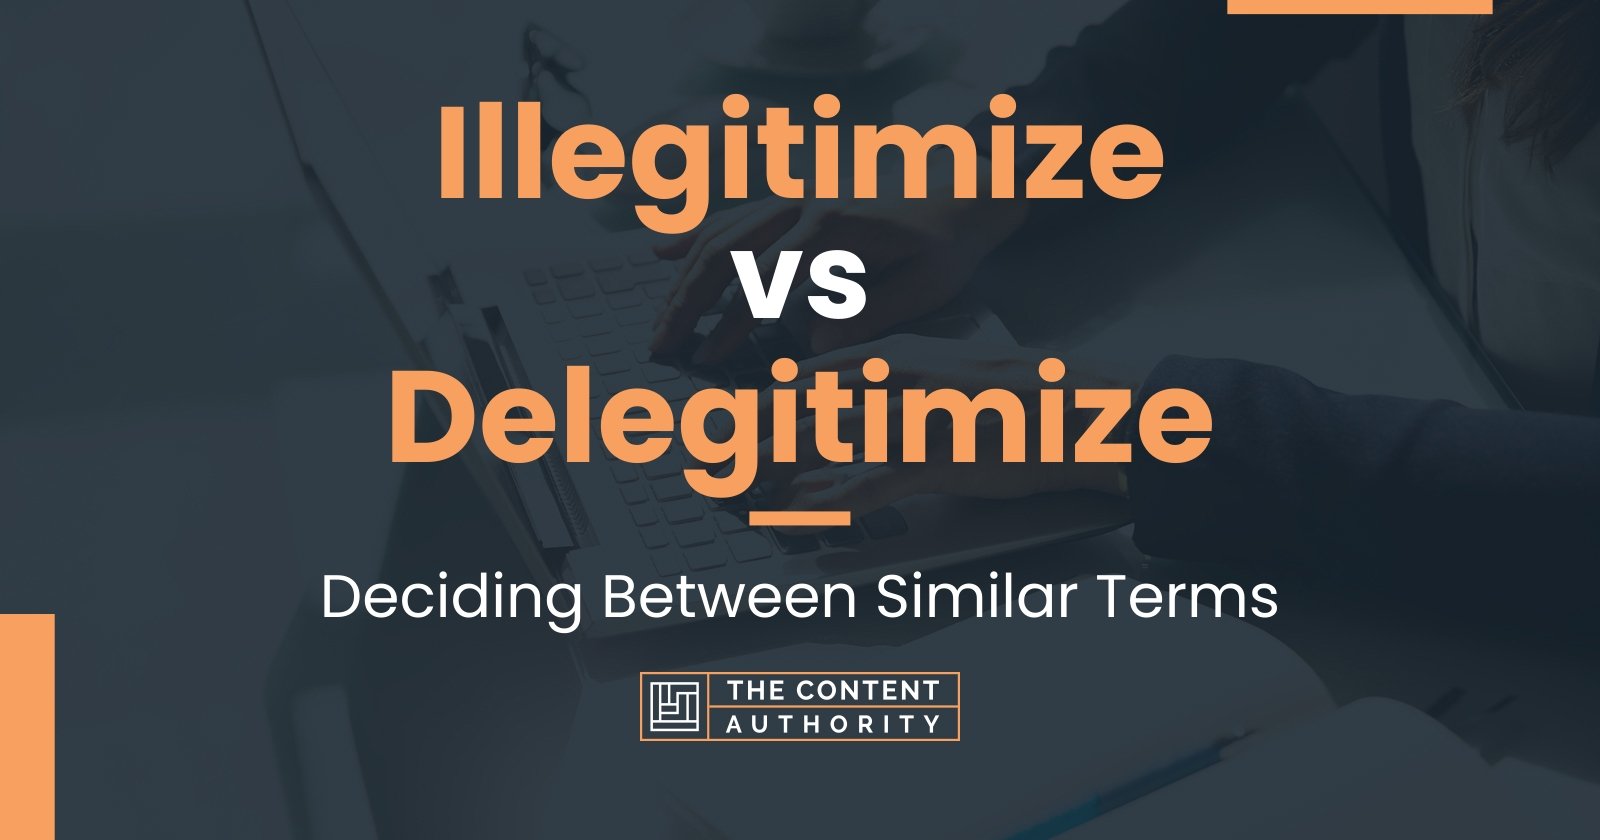 Illegitimize vs Delegitimize: Deciding Between Similar Terms